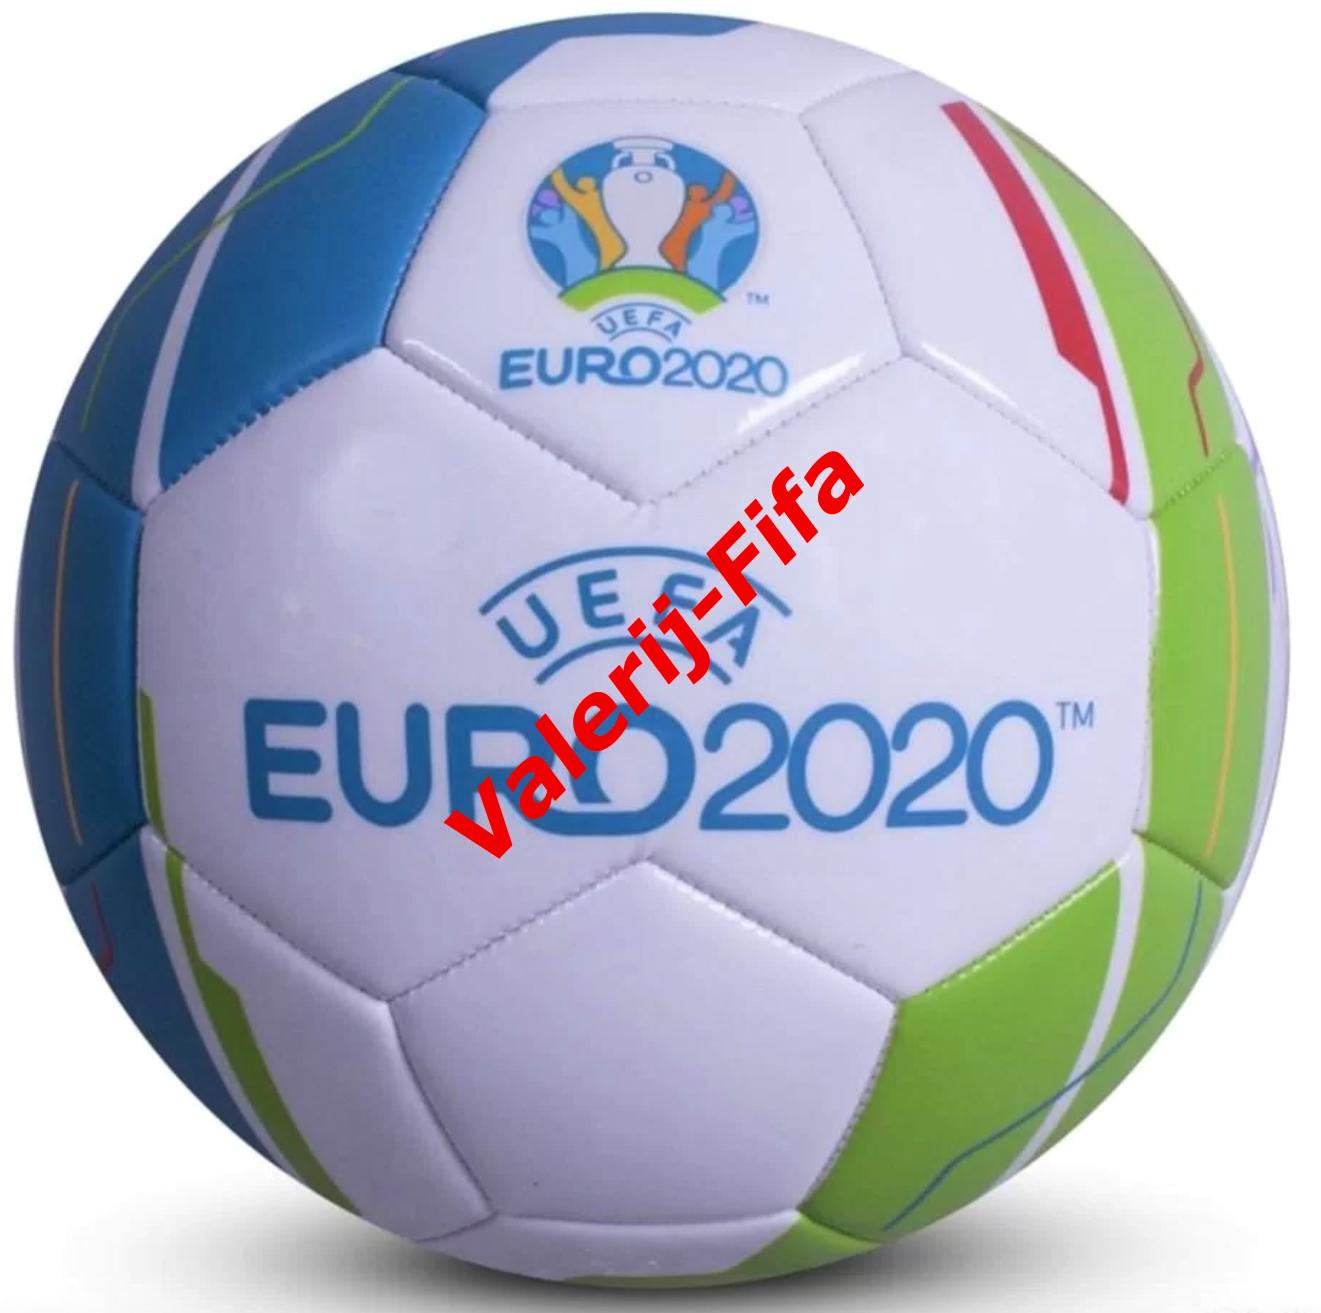 Официальный футбольный мяч Евро 2020. Размер 5 1